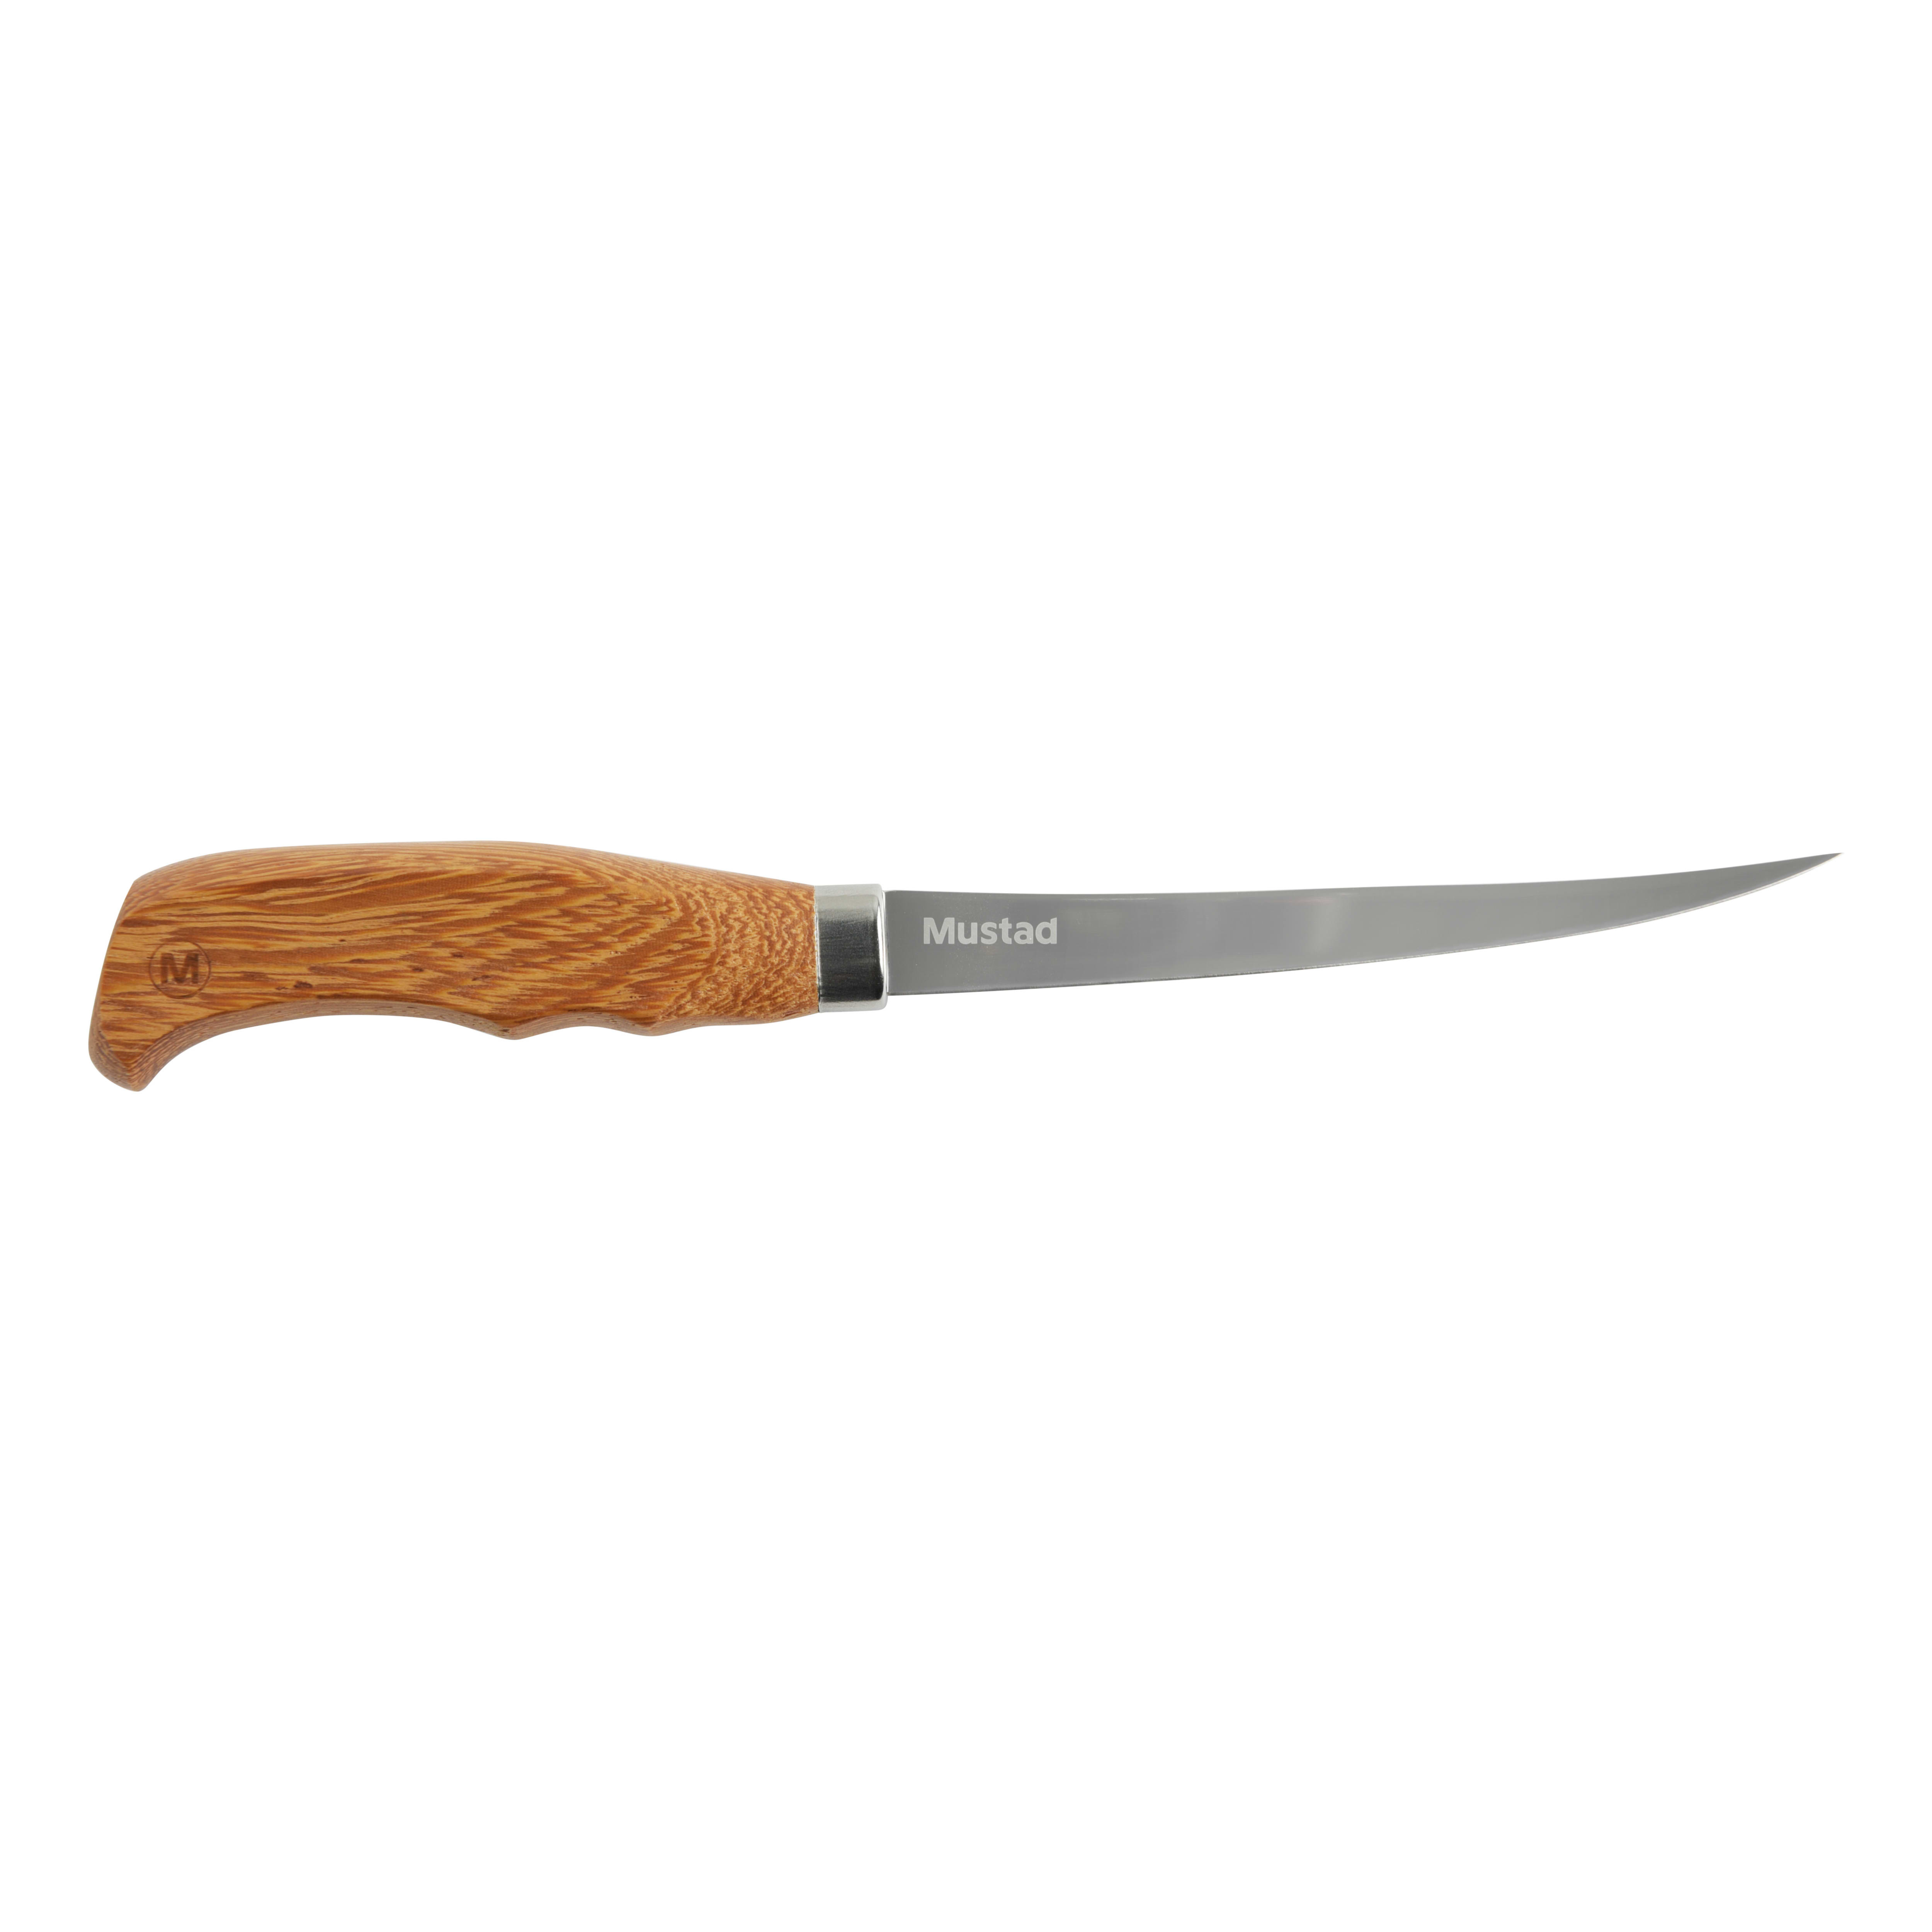 Mustad 6" Wood Handle Fillet Knife 